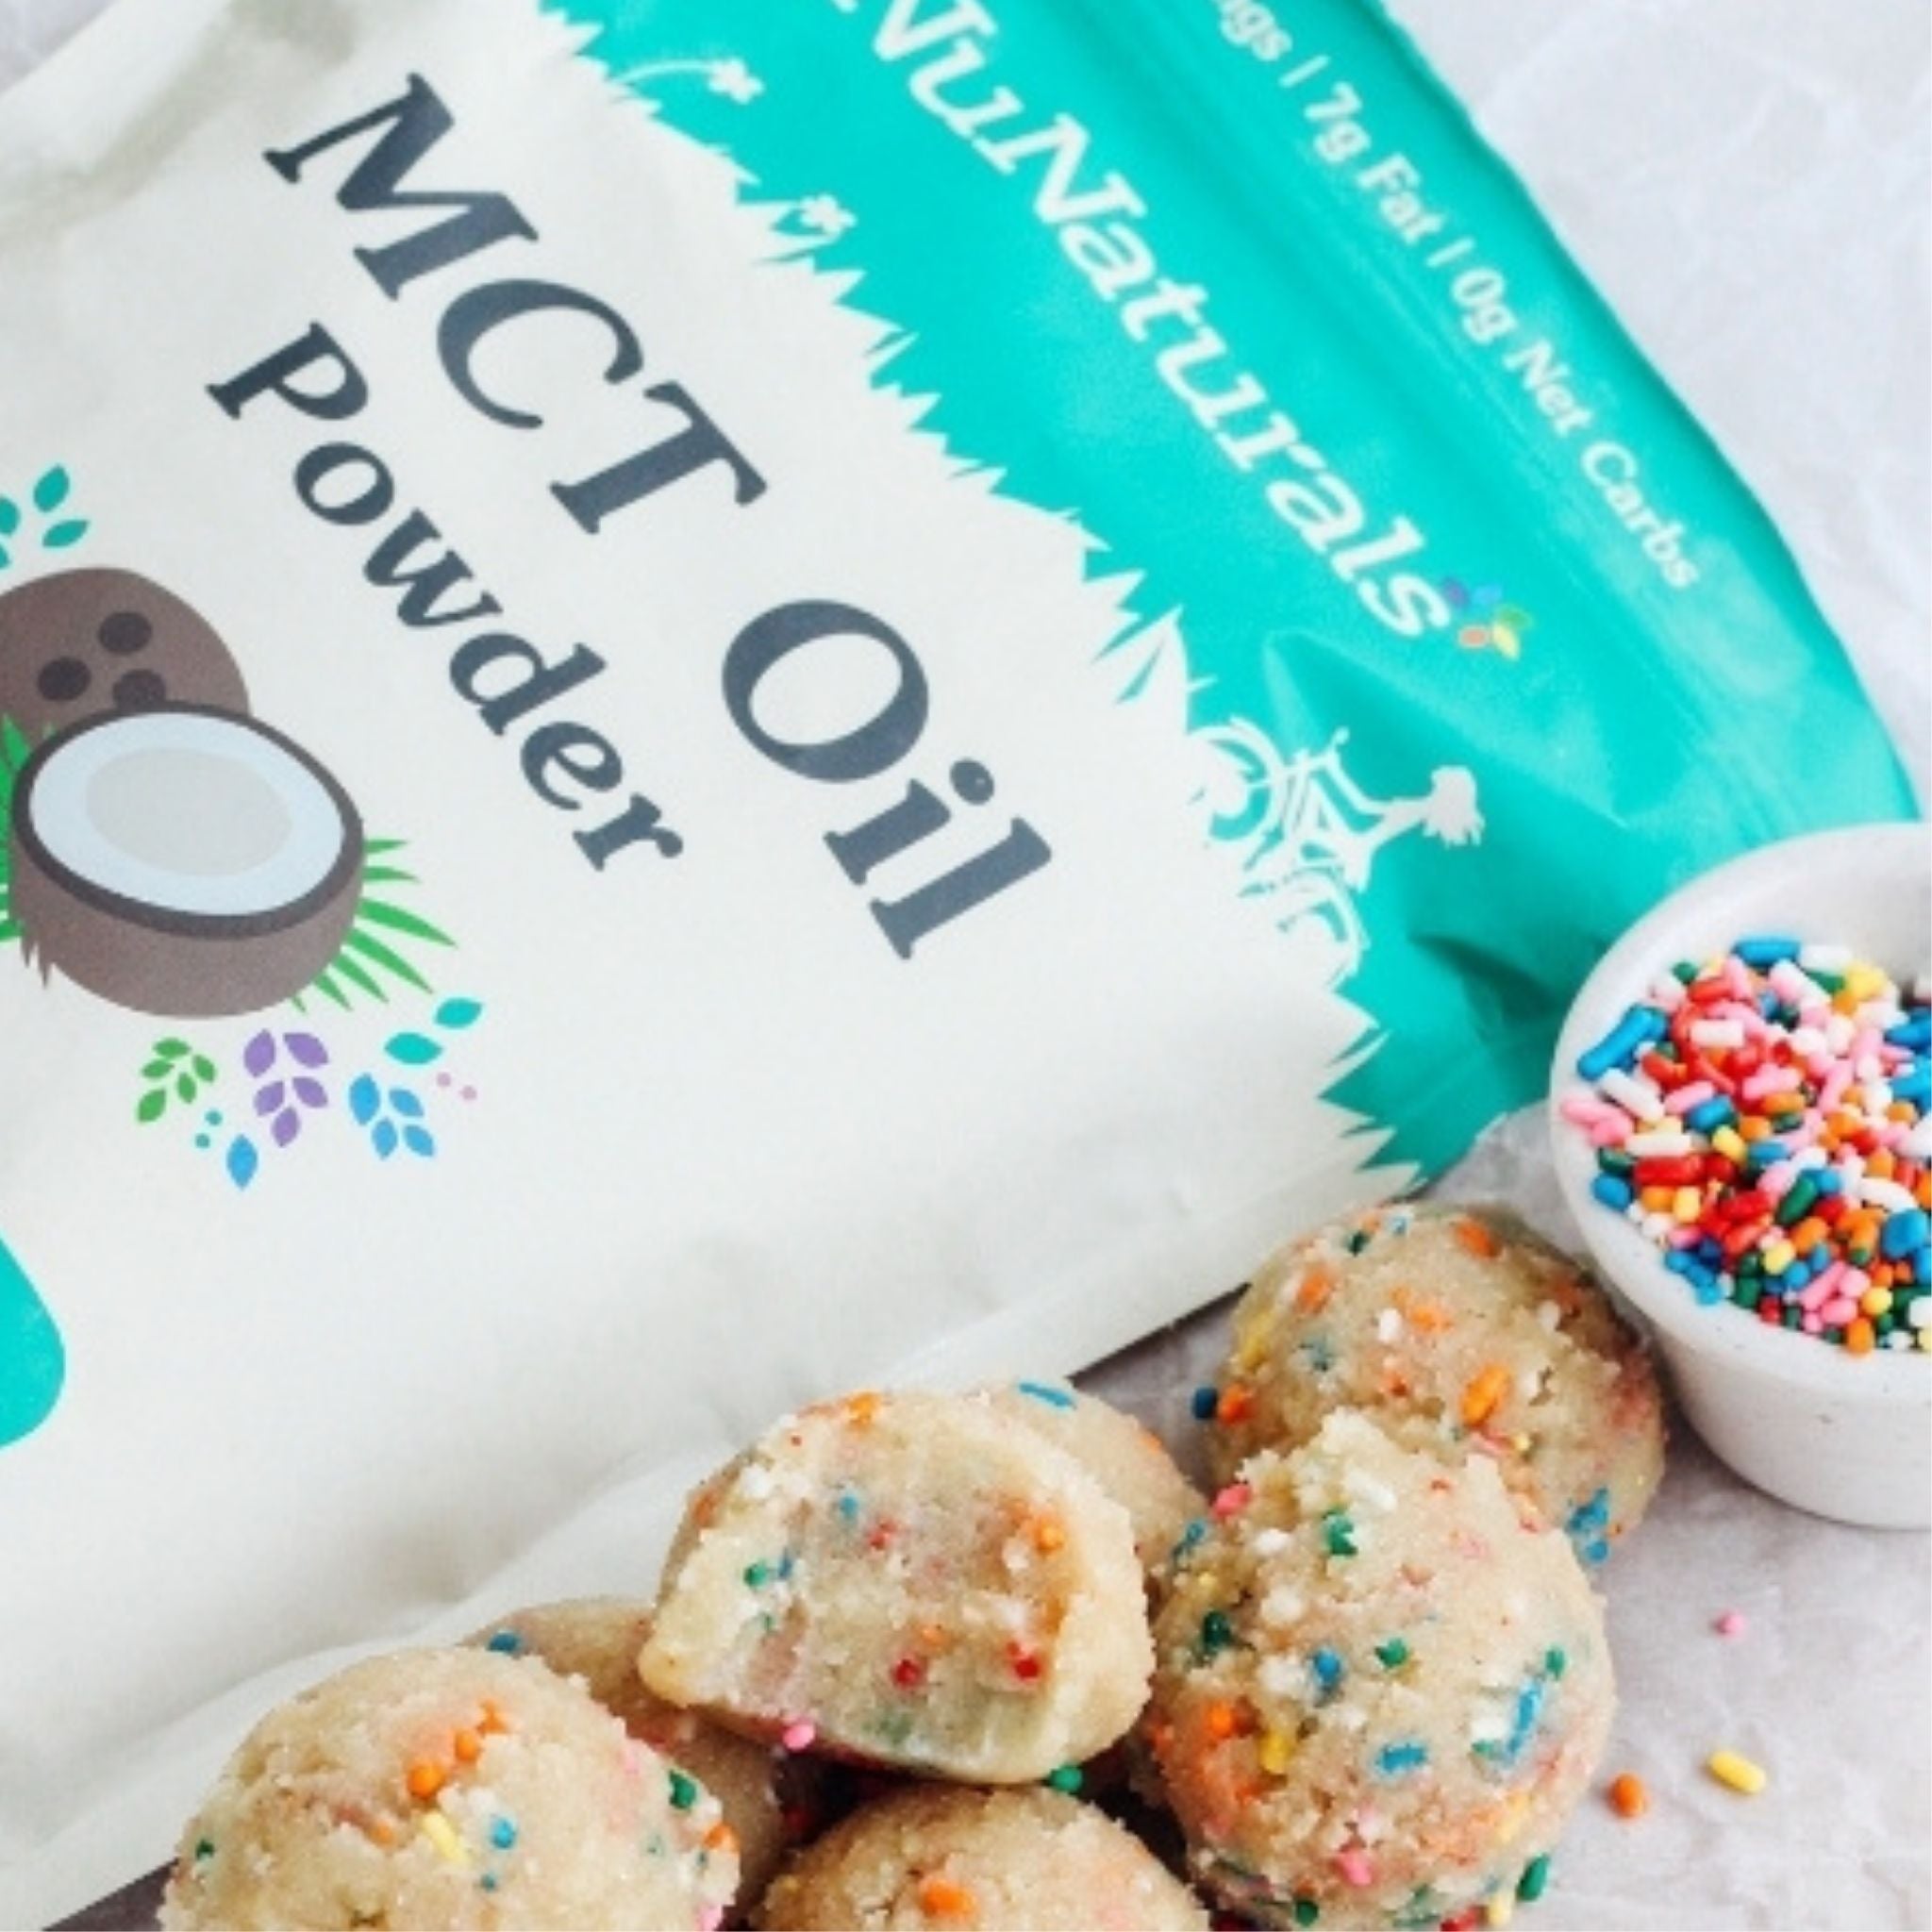 MCT Oil Powder 16 oz